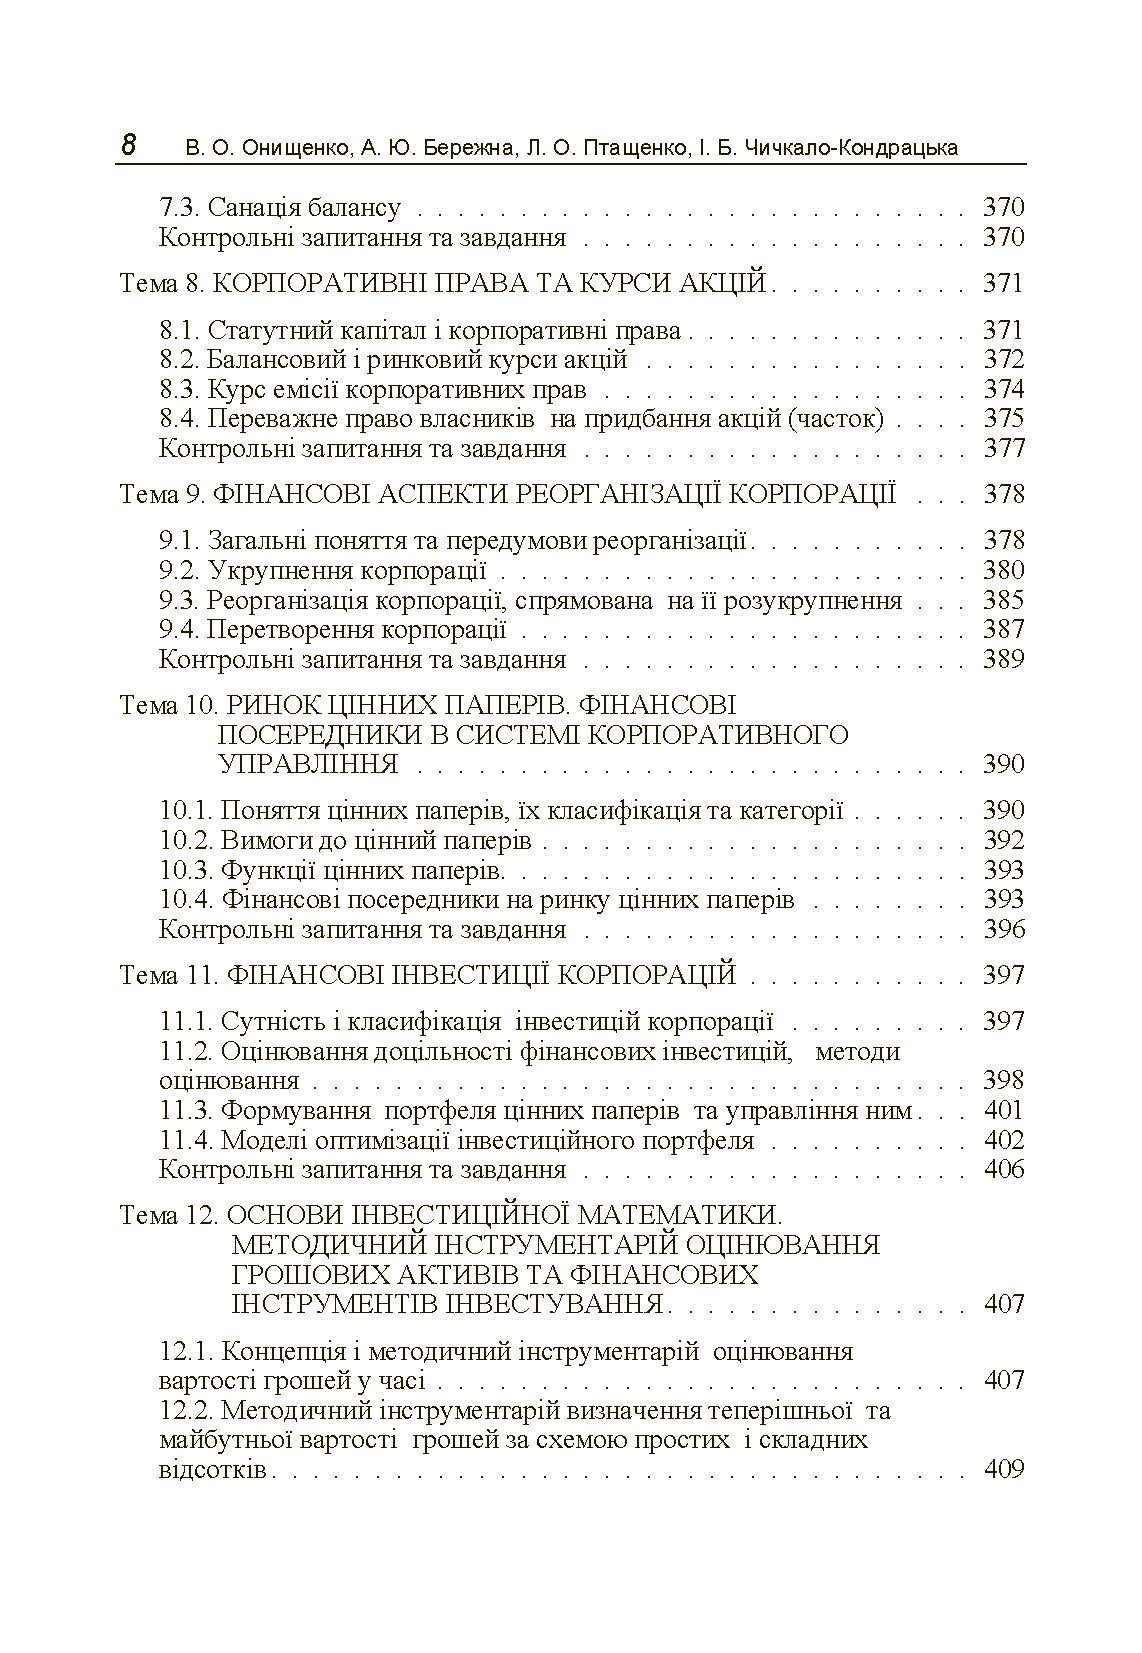 Фінанси (державні, корпоративні, міжнародні) (2019 год)). Автор — Онищенко В.О.. 